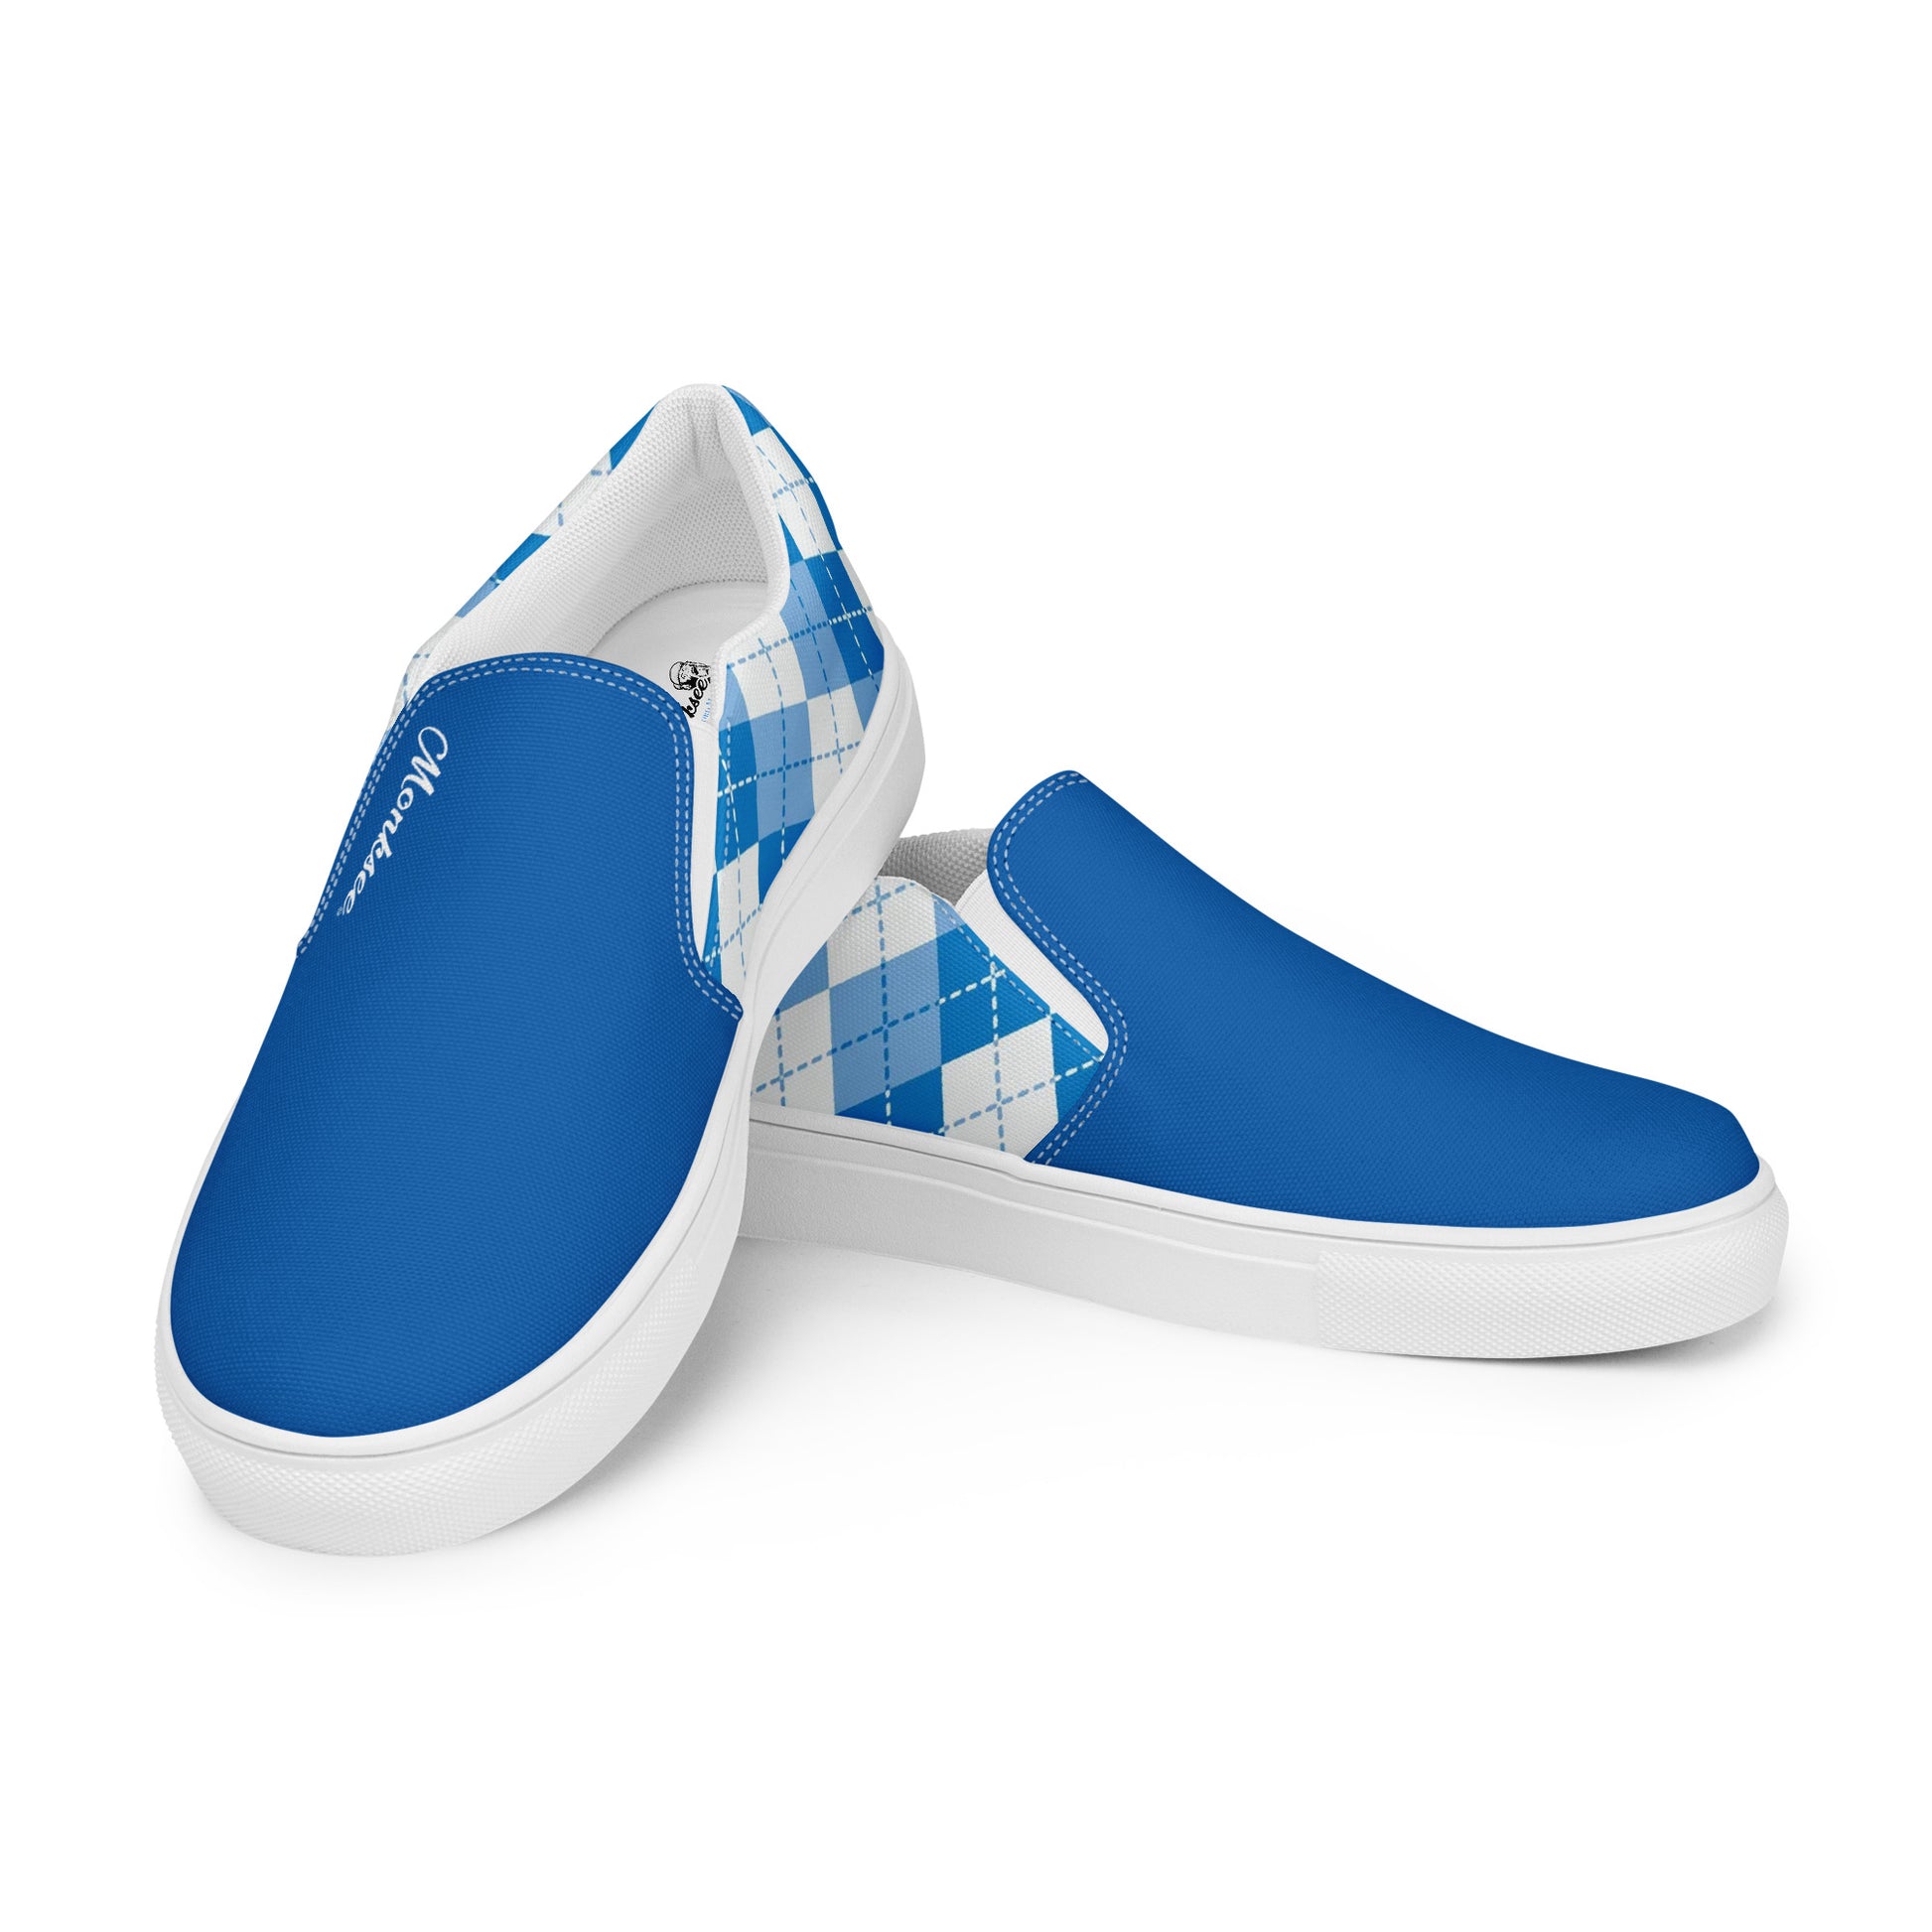 Lord Monksee - Argyle Men's shoe (blue).